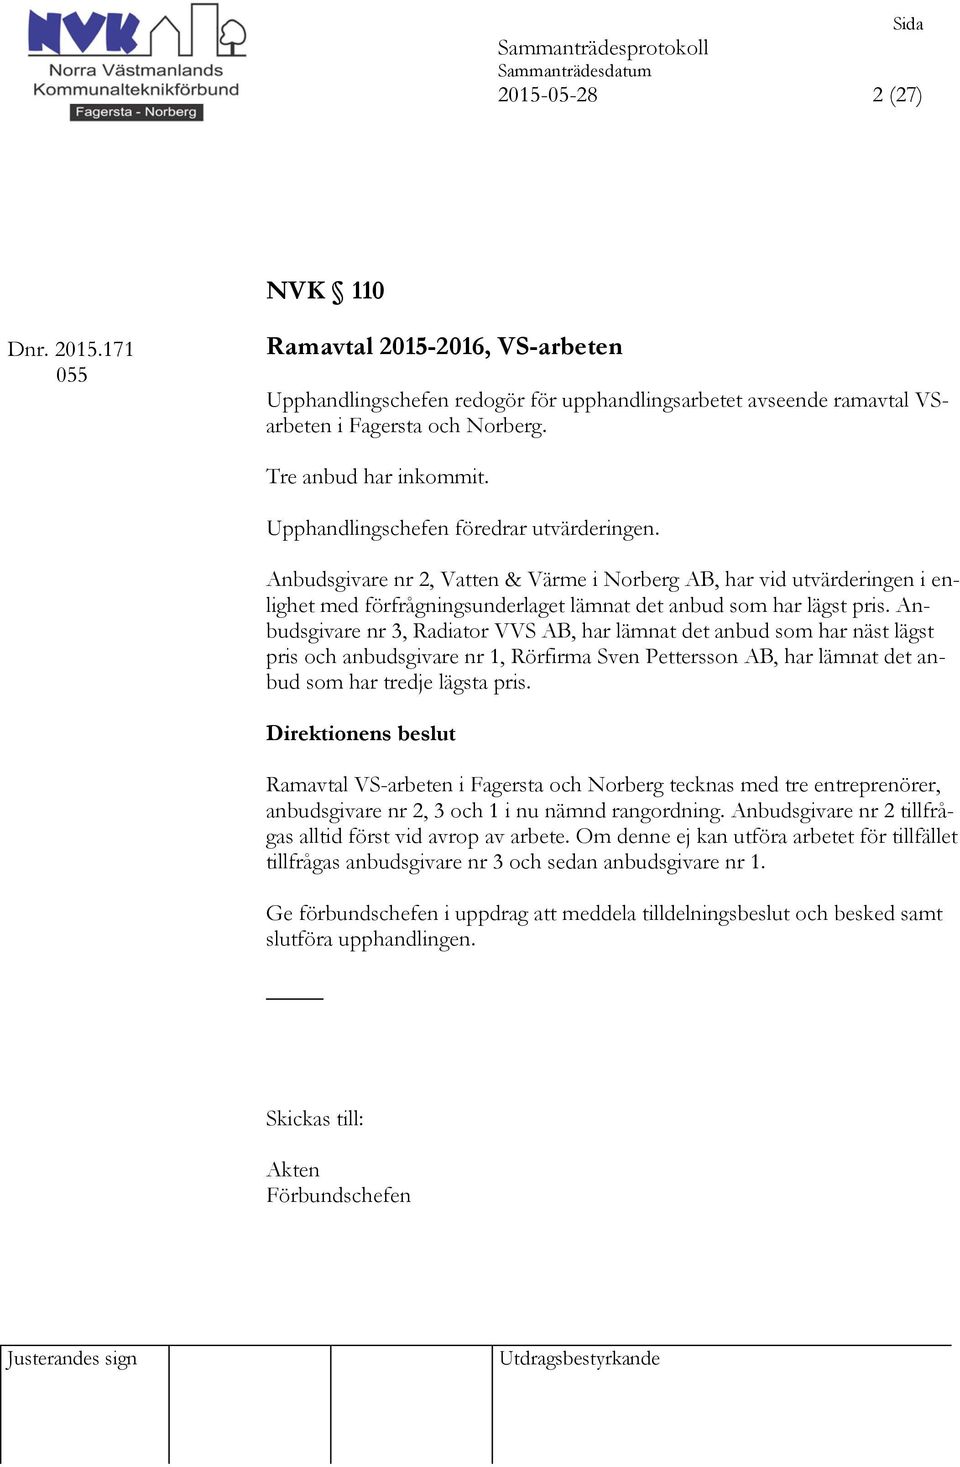 Anbudsgivare nr 2, Vatten & Värme i Norberg AB, har vid utvärderingen i enlighet med förfrågningsunderlaget lämnat det anbud som har lägst pris.